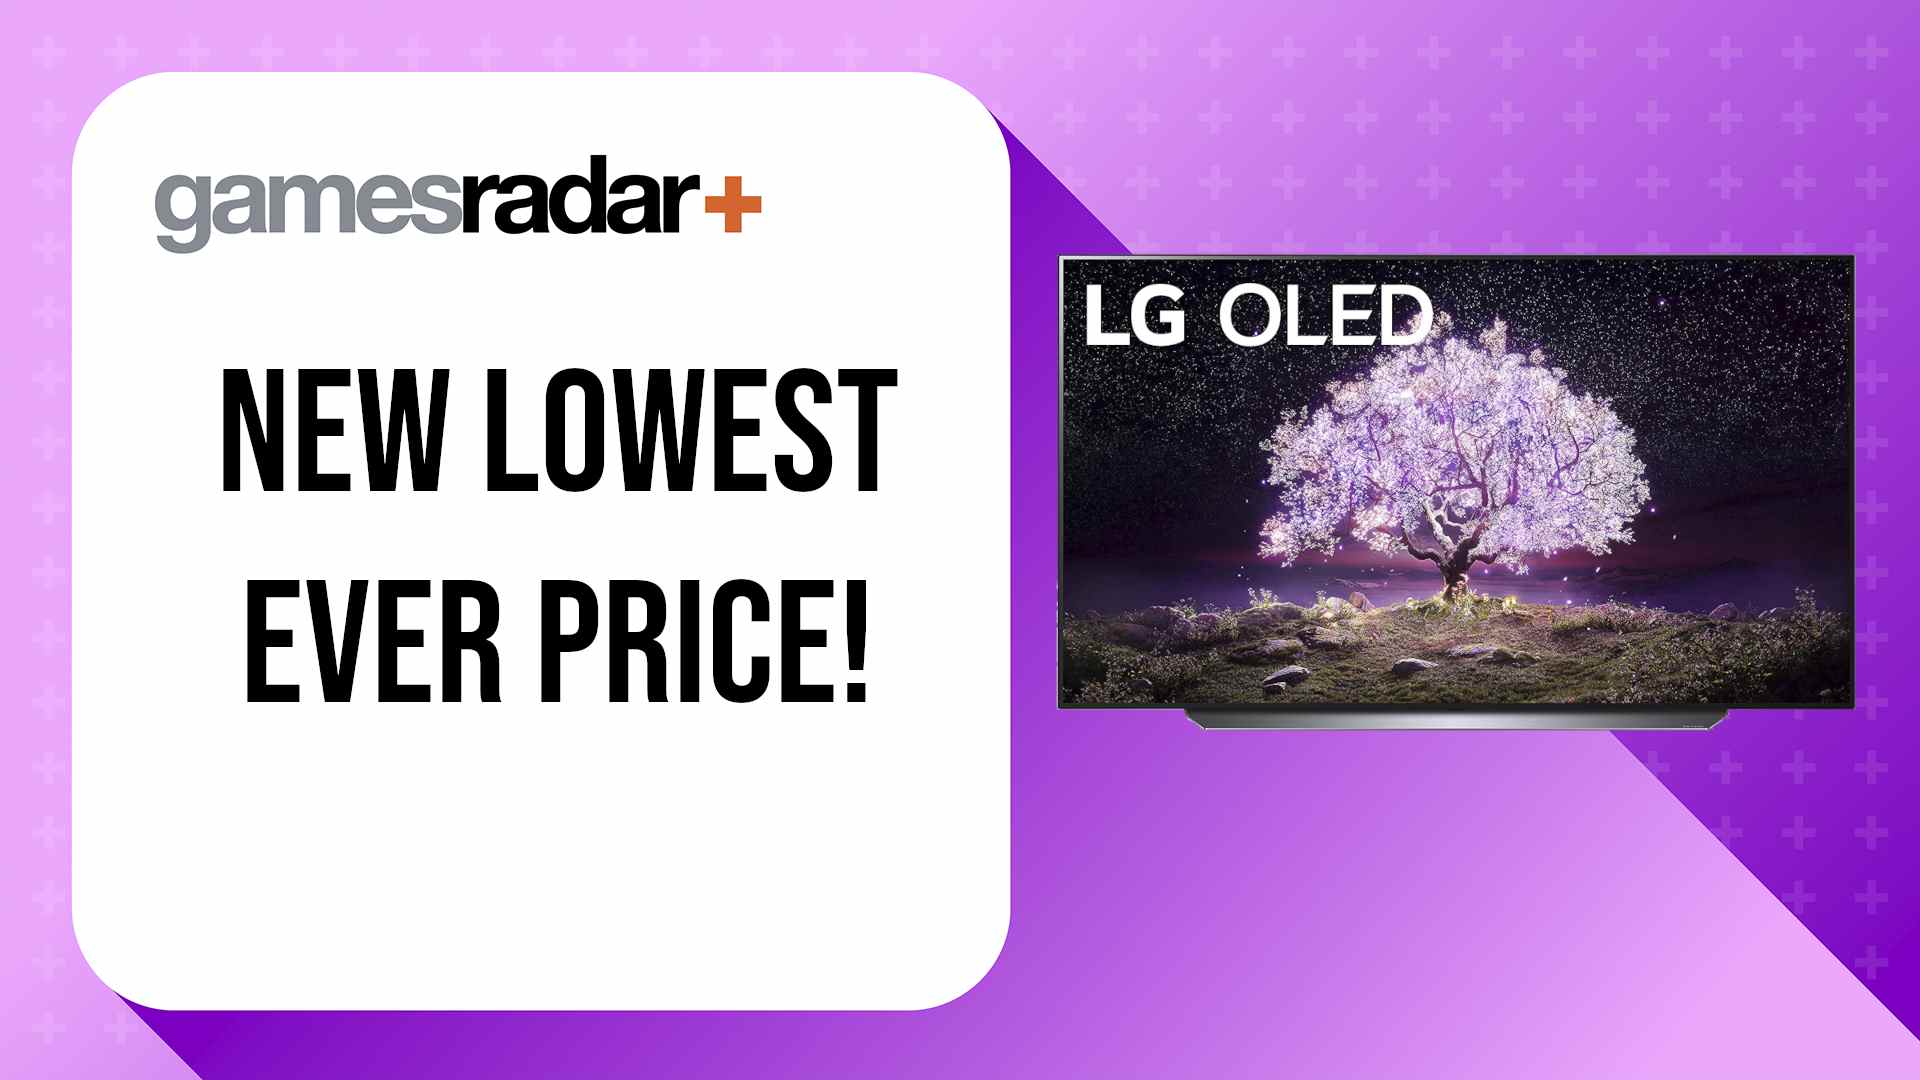 LG C1 prix le plus bas jamais enregistré